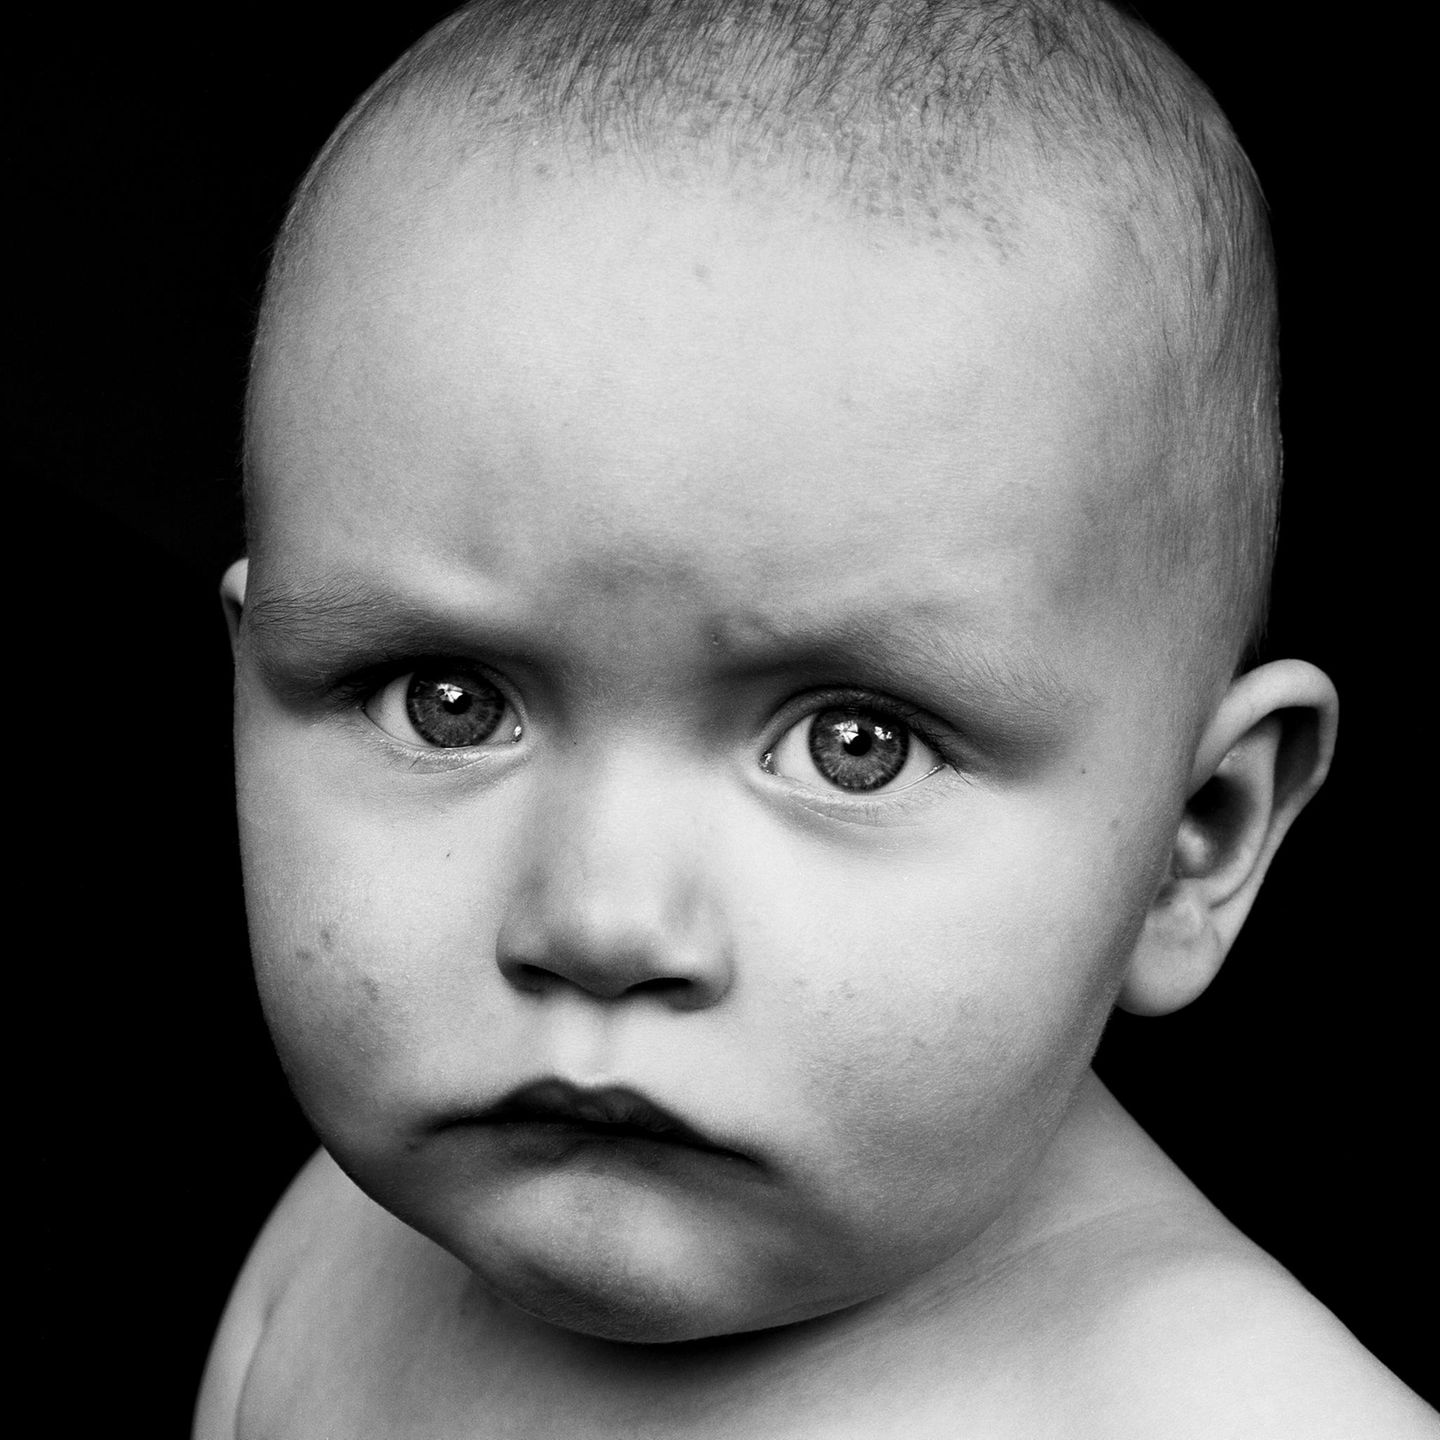 Ein Baby schaut mit hochgezogenen Augenbrauen ernst in die Kamera